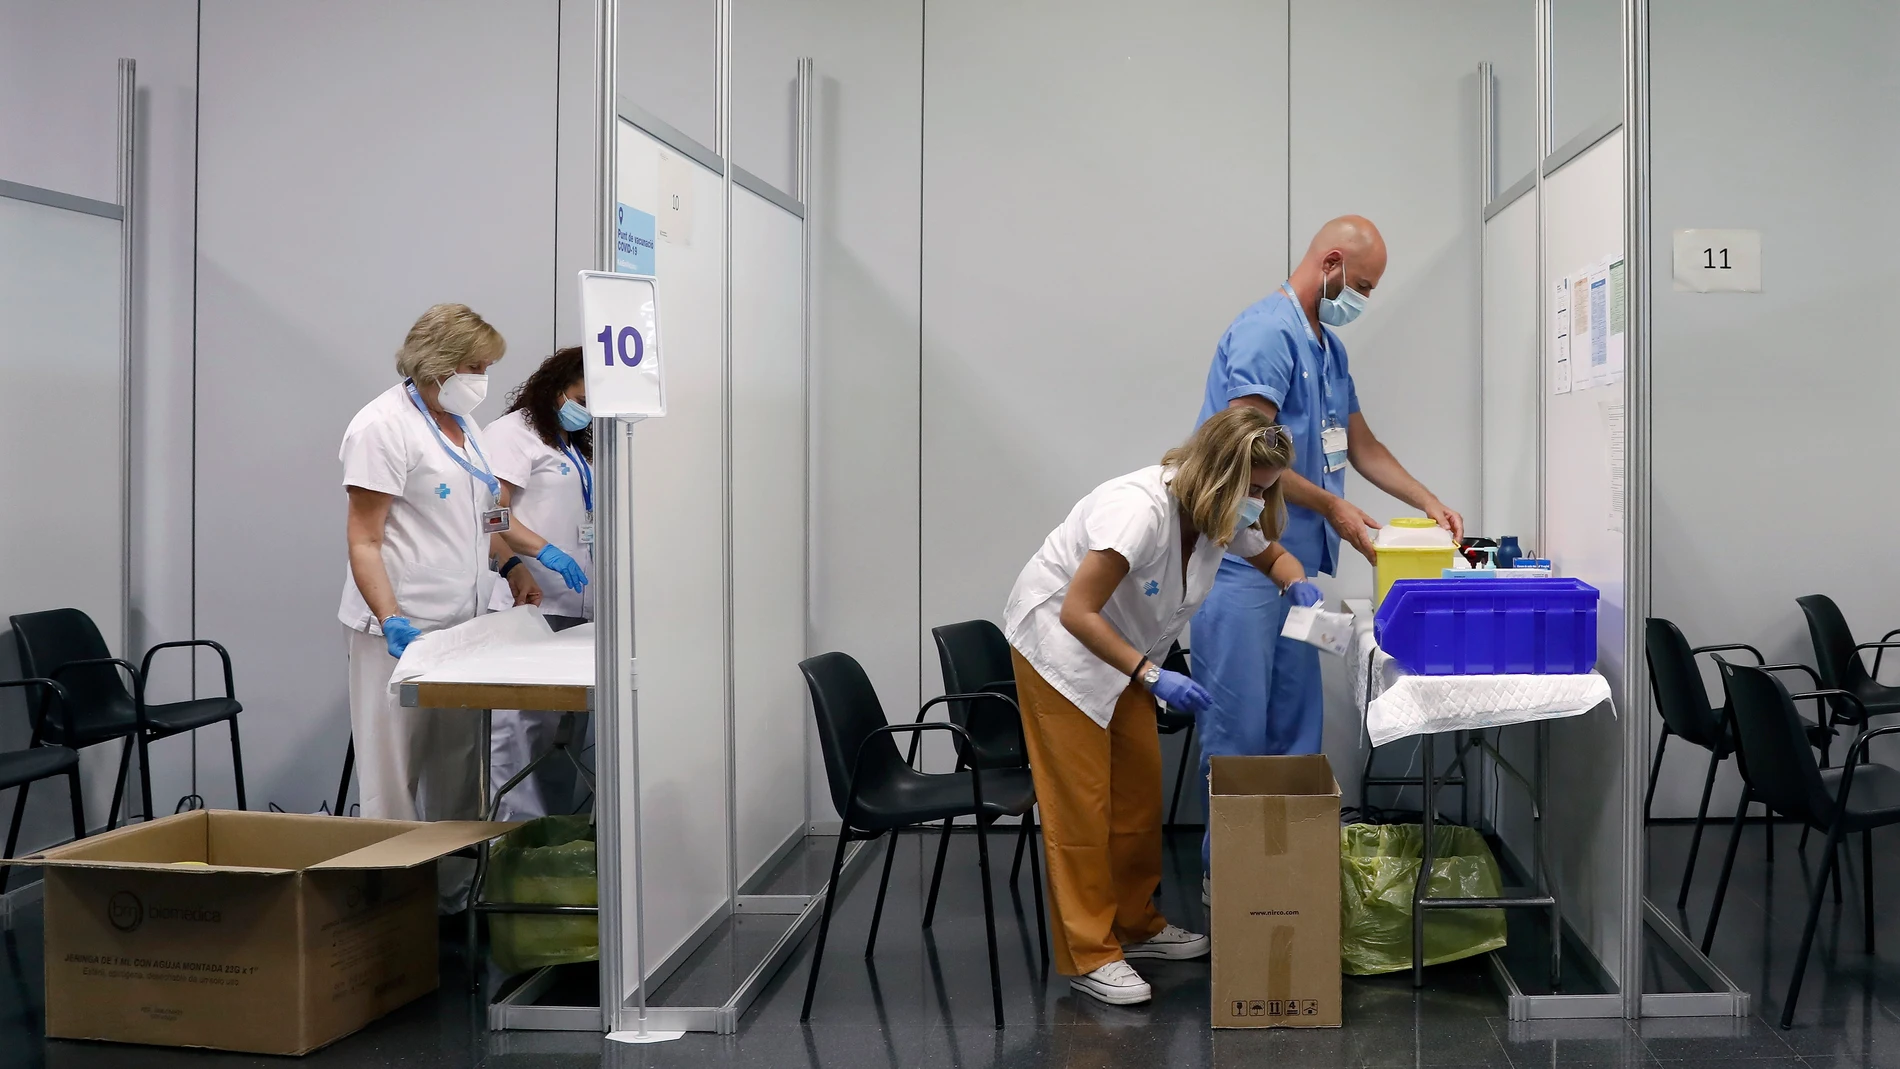 Sanitarios empaquetan ayer material en el centro de vacunación de La Farga, en L'Hospitalet (Barcelona), uno de los 41 grandes centros que el Departamento de Salud de la Generalitat cerrará de forma progresiva, pasando de los 60 actuales a solo 19, en un proceso que ya ha comenzado con el desmantelamiento de algunos de ellos.